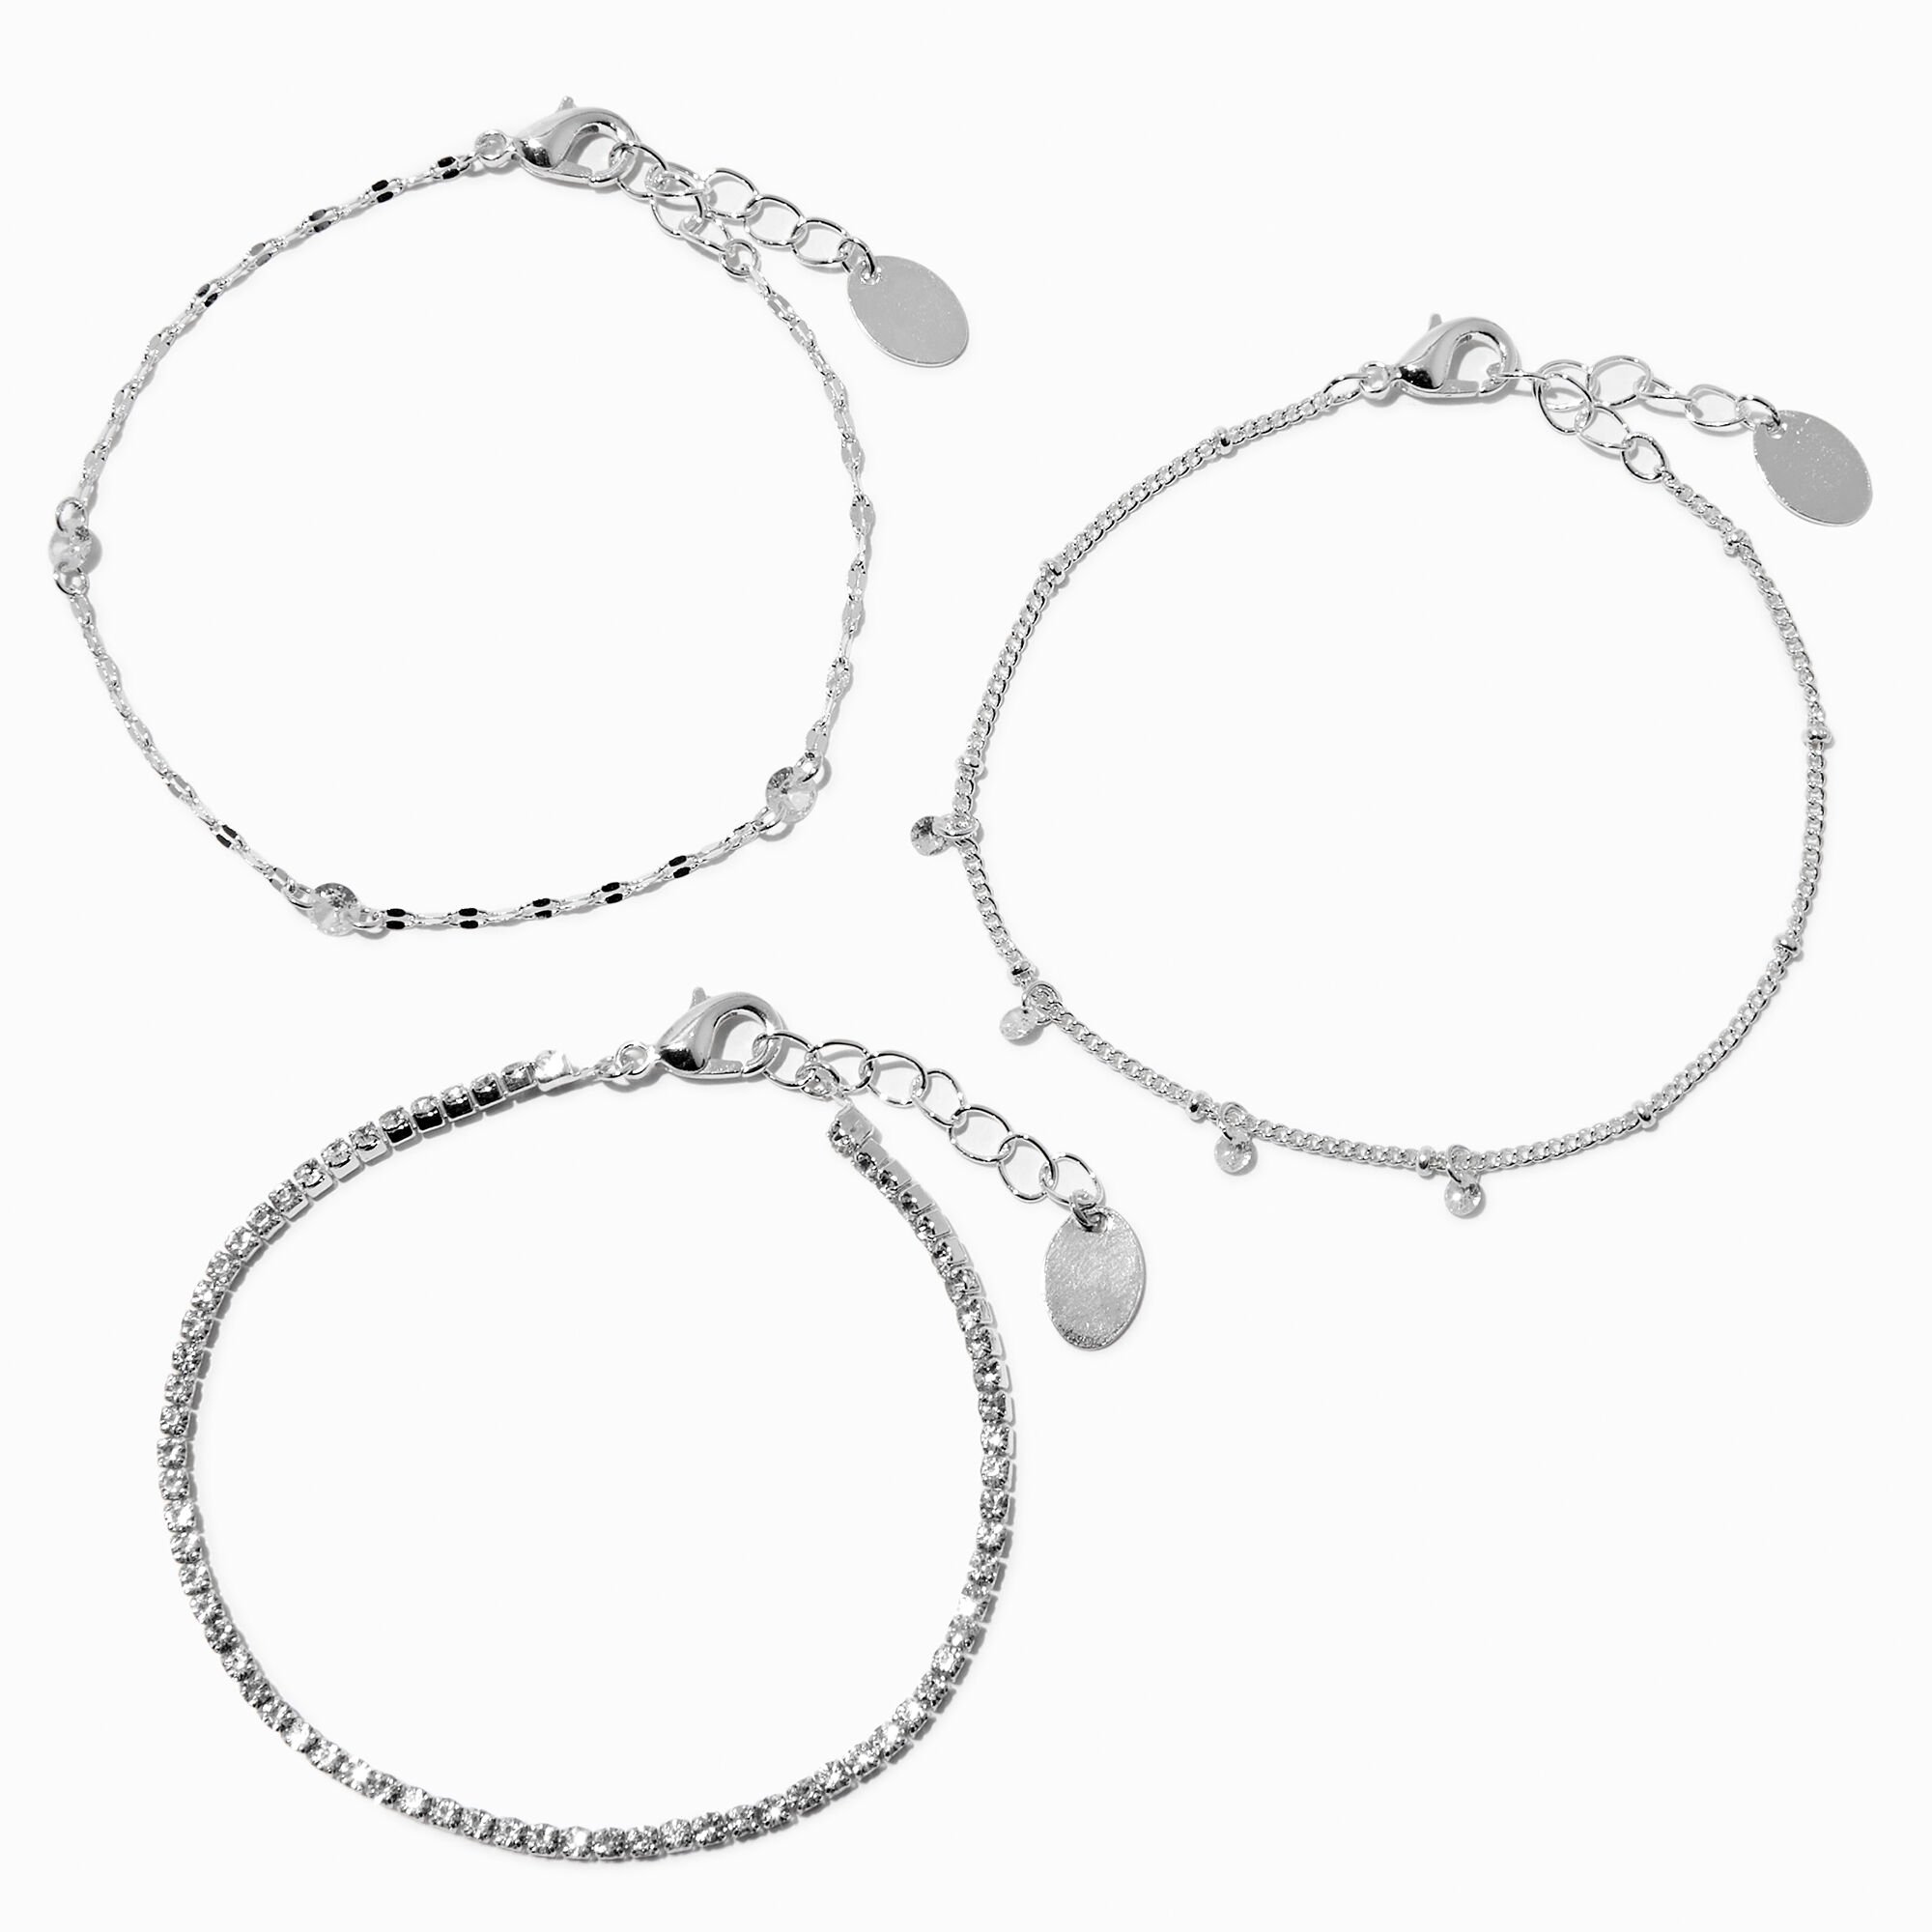 View Claires Tone Cubic Zirconia Confetti Bracelet Set 3 Pack Silver information